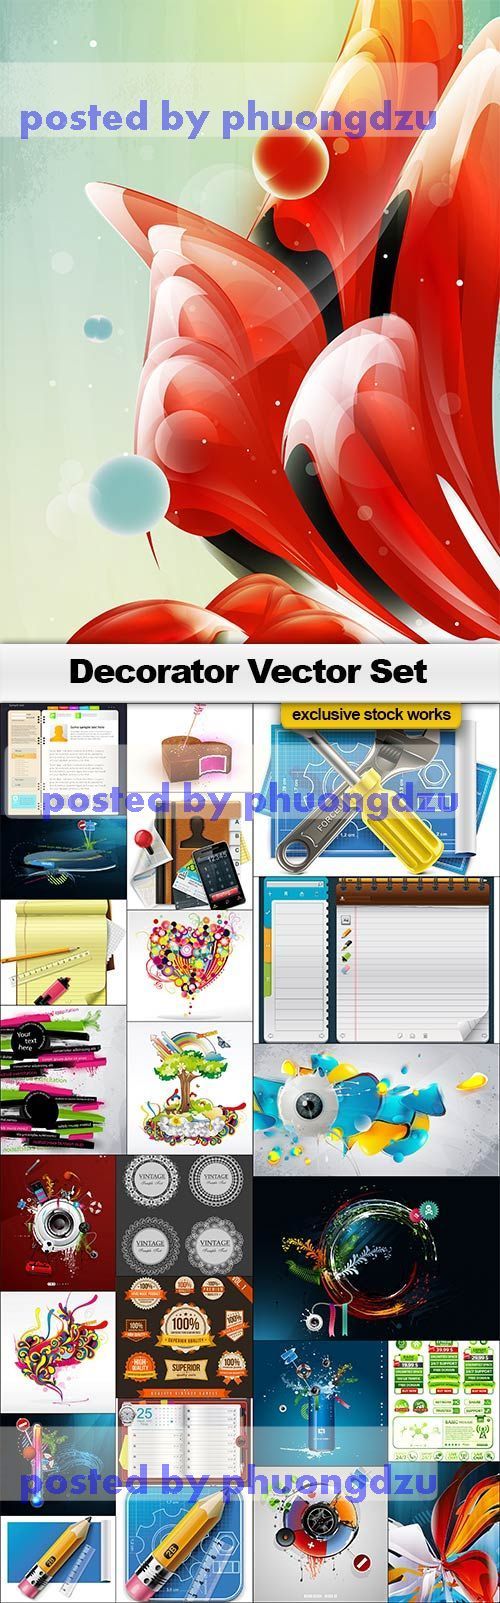 Decorators Vector Set 1